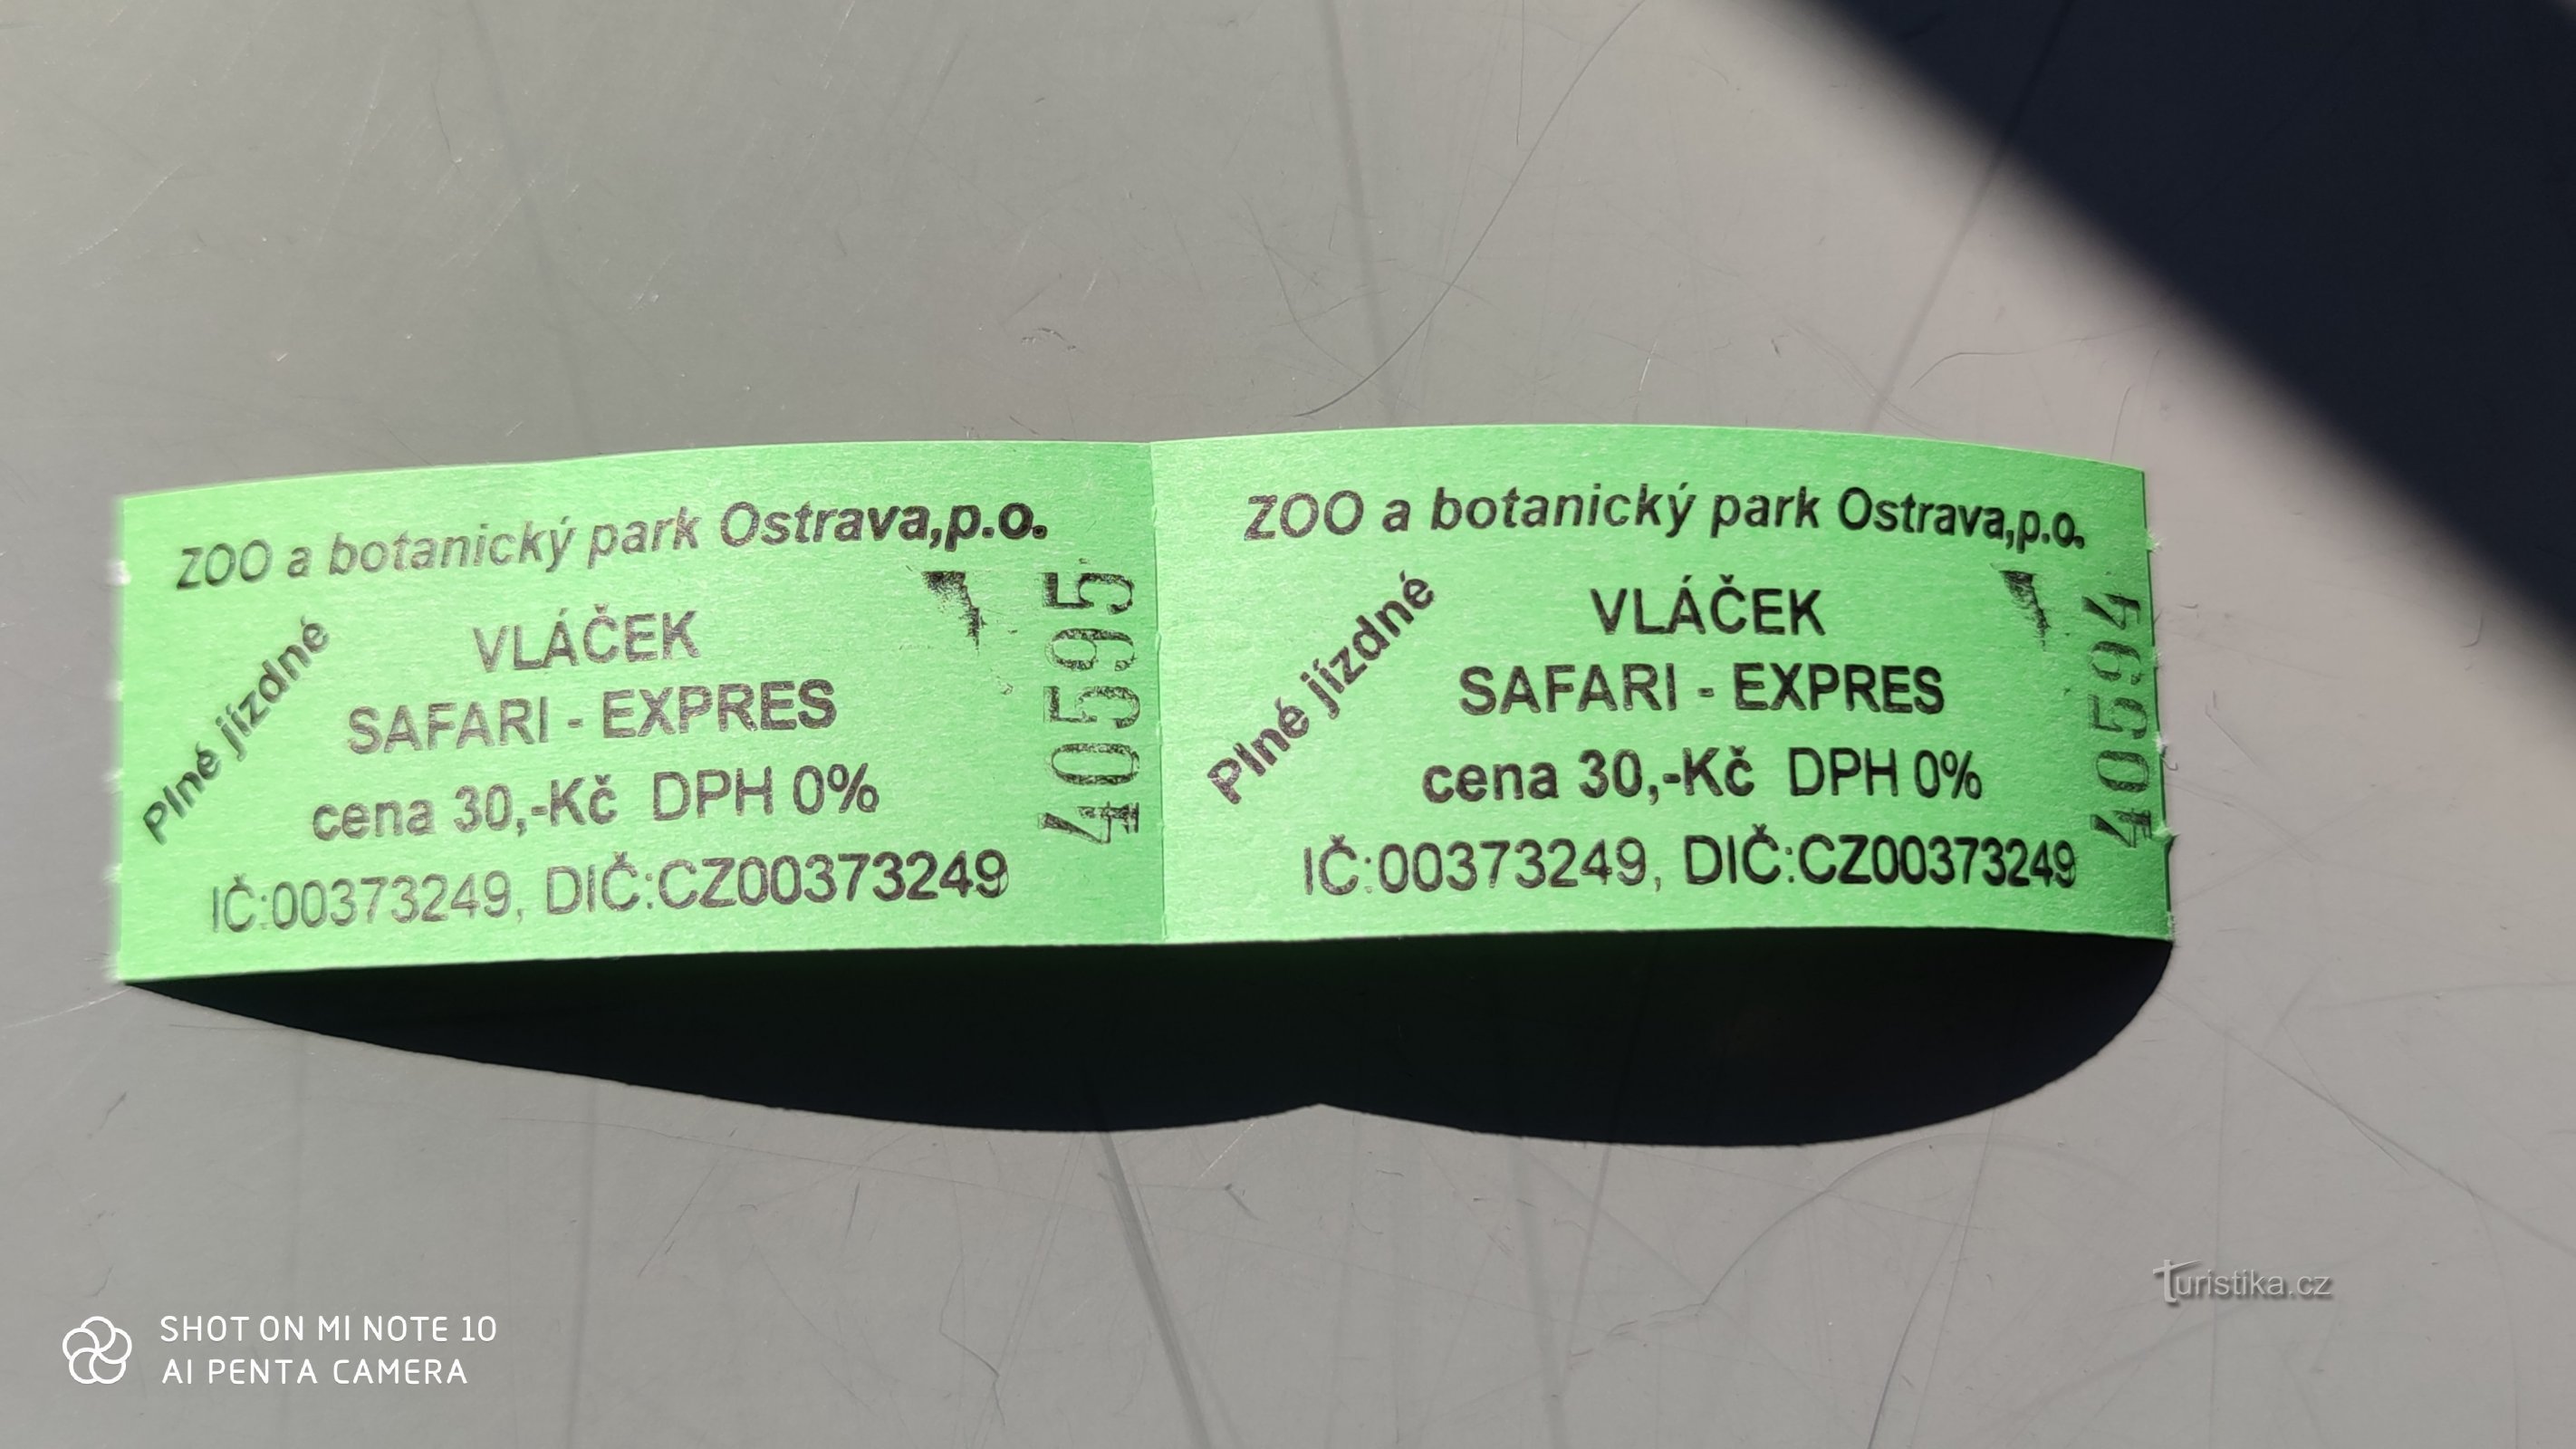 Safari express u zoološkom vrtu u Ostravi